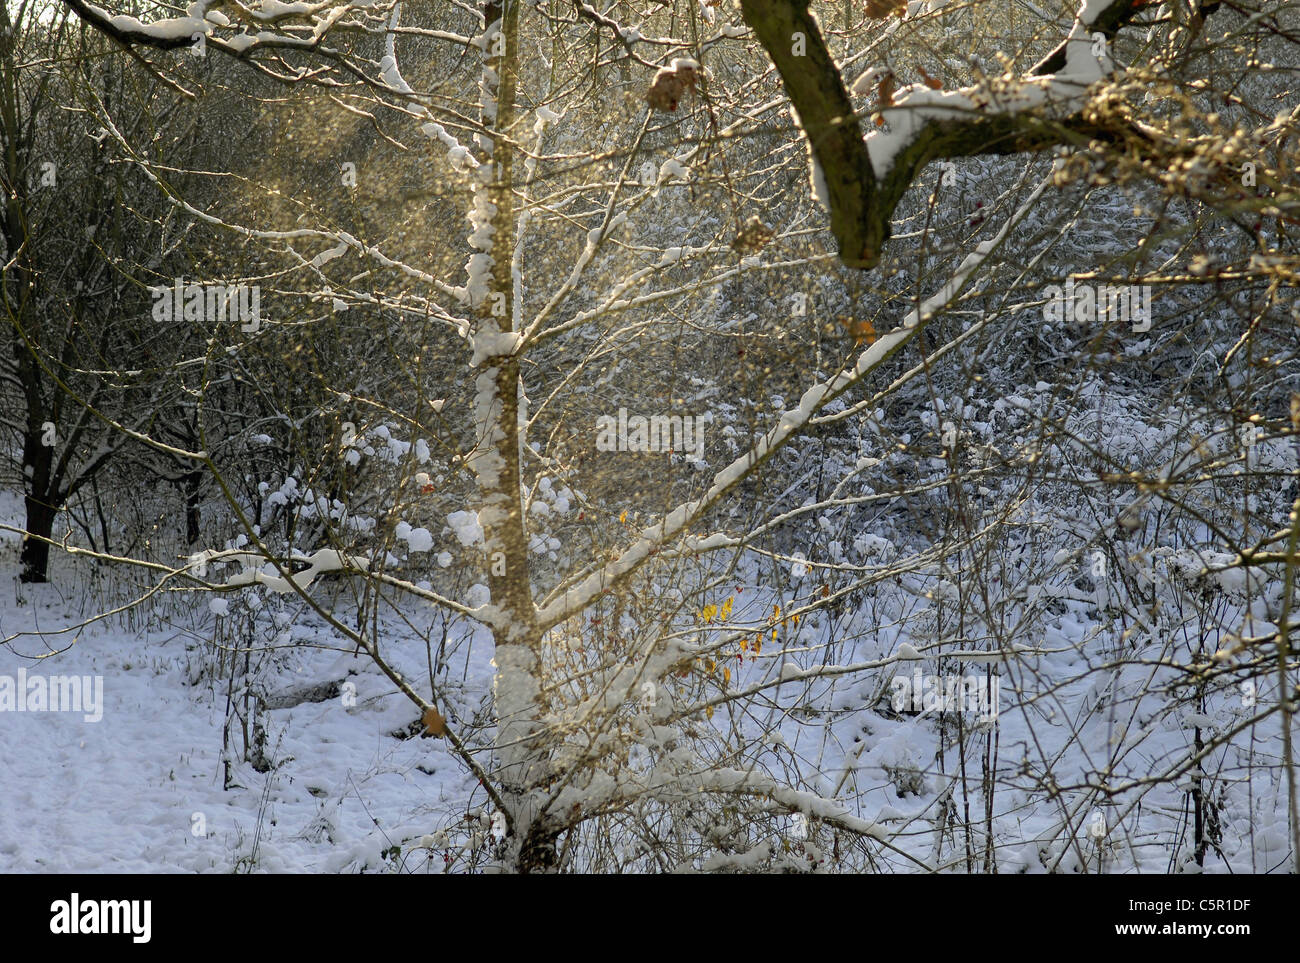 Escena de Invierno en el bosque de Charnwood, Leicestershire después de fuertes nevadas. Foto de stock